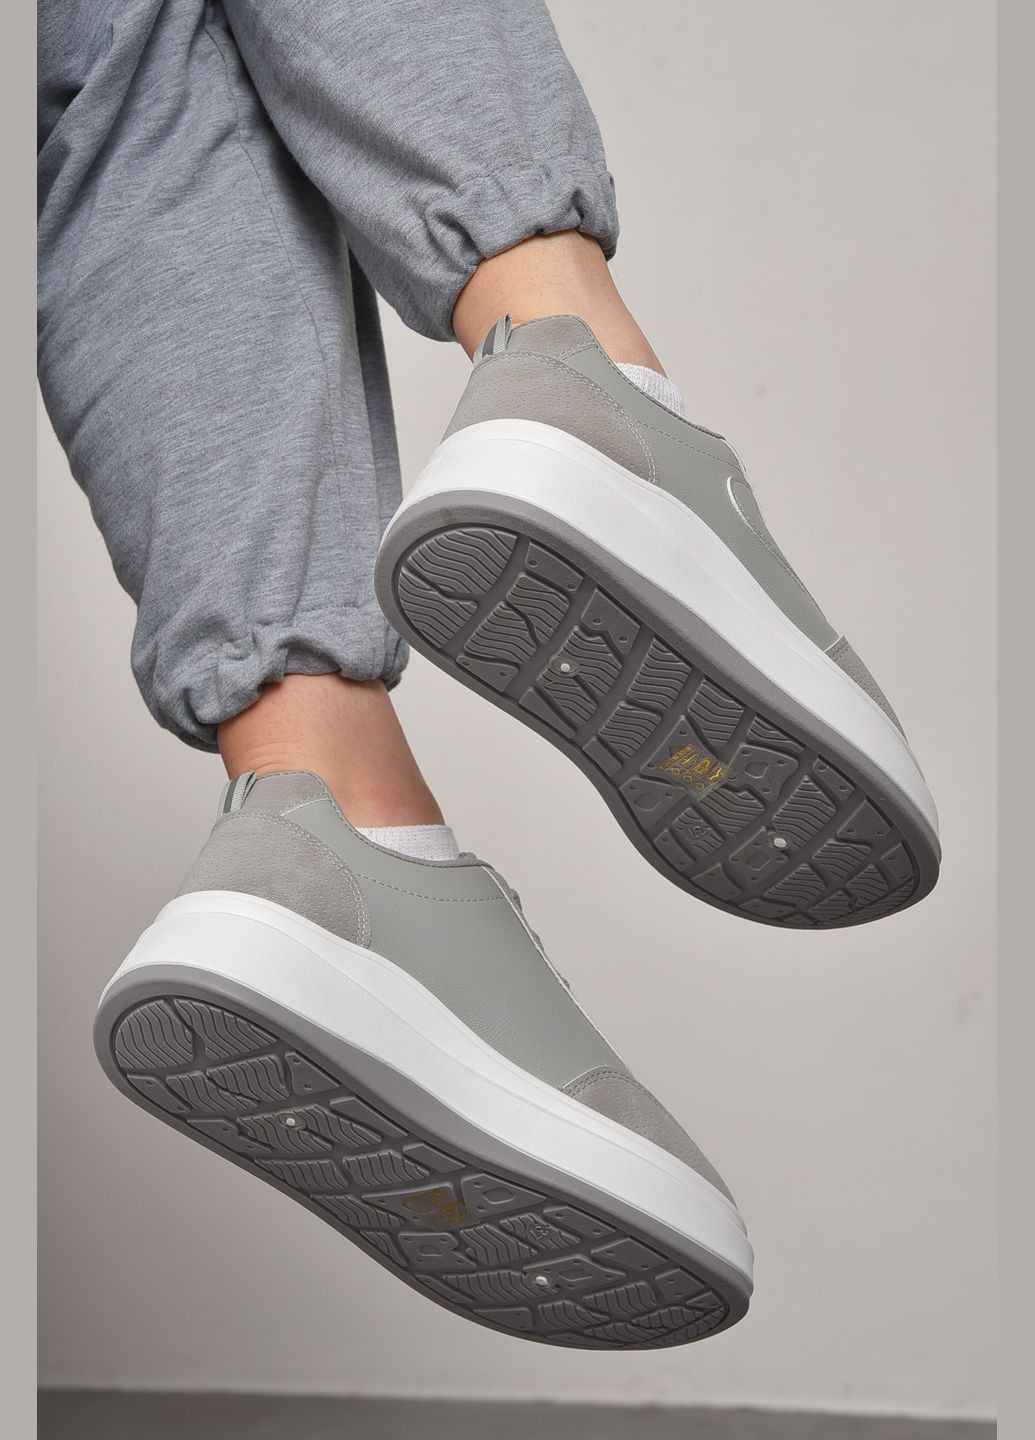 Серые демисезонные кроссовки женские серого цвета на шнуровке Let's Shop